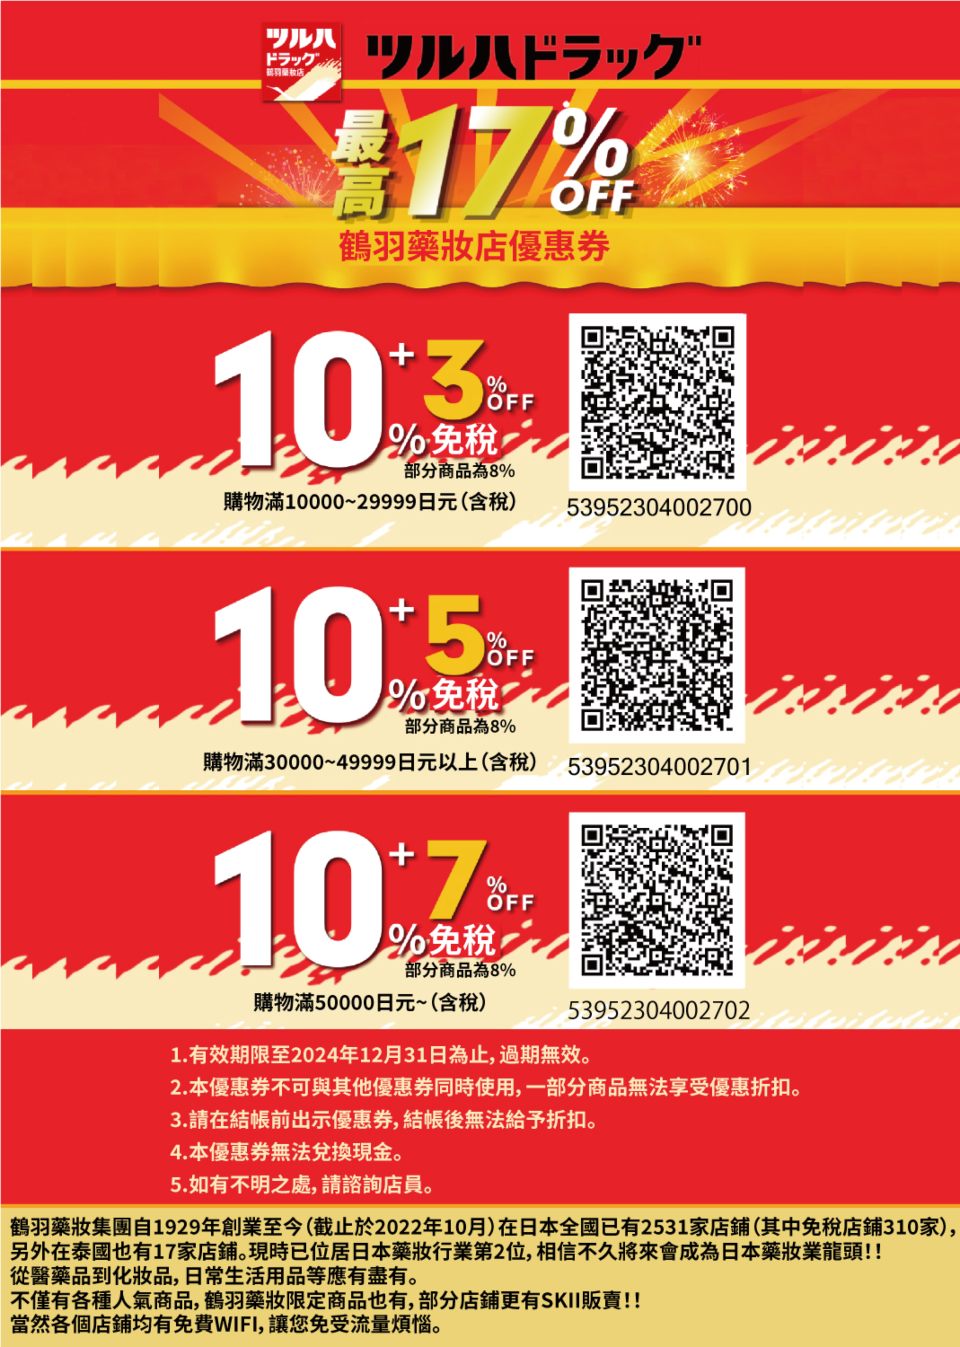 鶴羽藥妝 優惠券 兌換方式
日本自由行 購物優惠